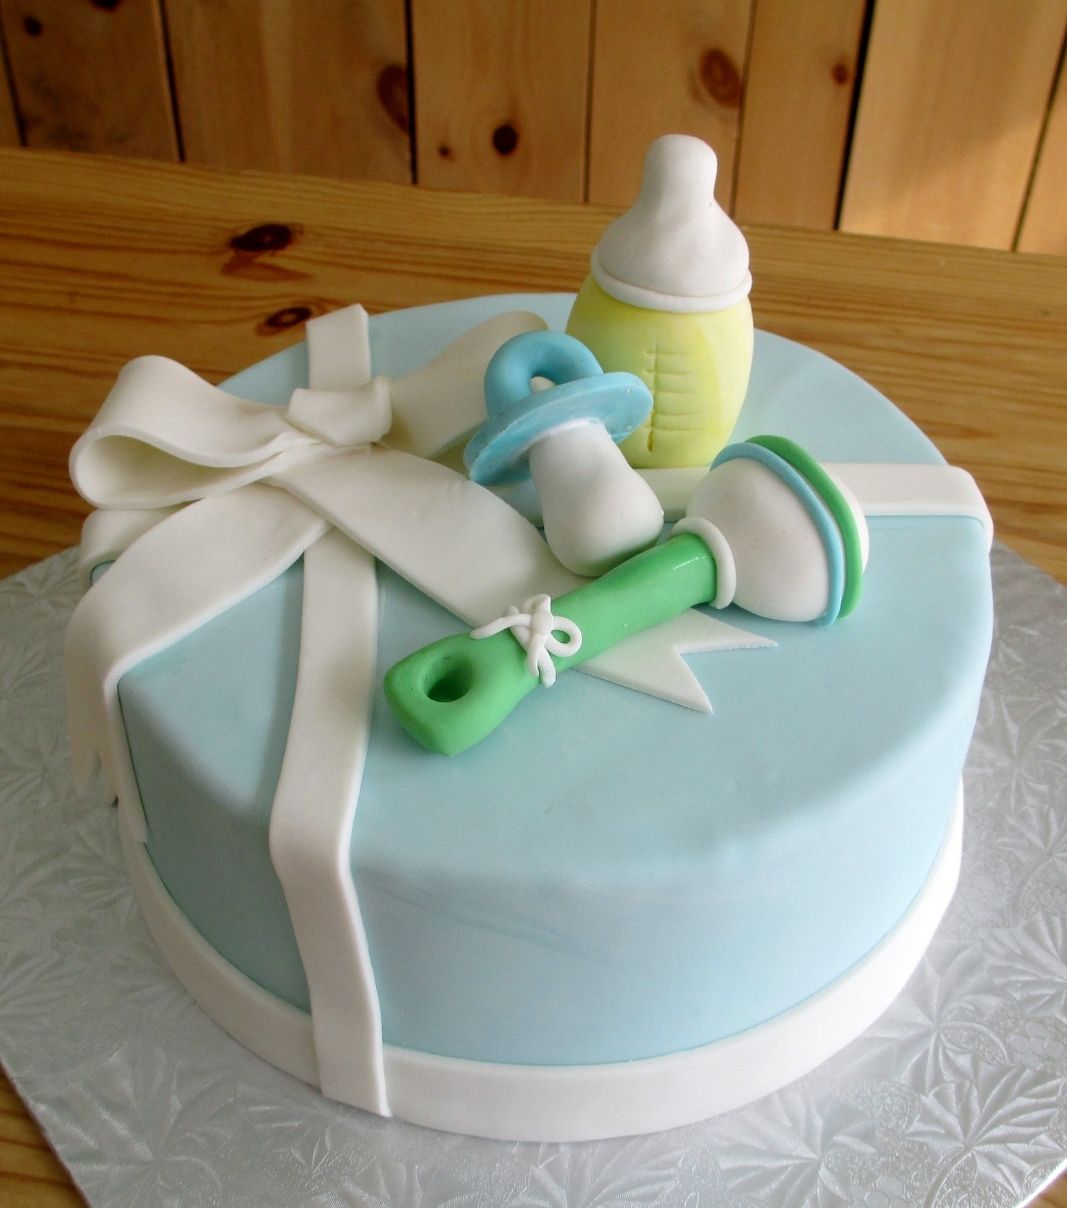 Gâteau shower de bébé garçon: gâteau avec une couverture au fondant et décoré d'items de bébé: suce, hochet et biberon.